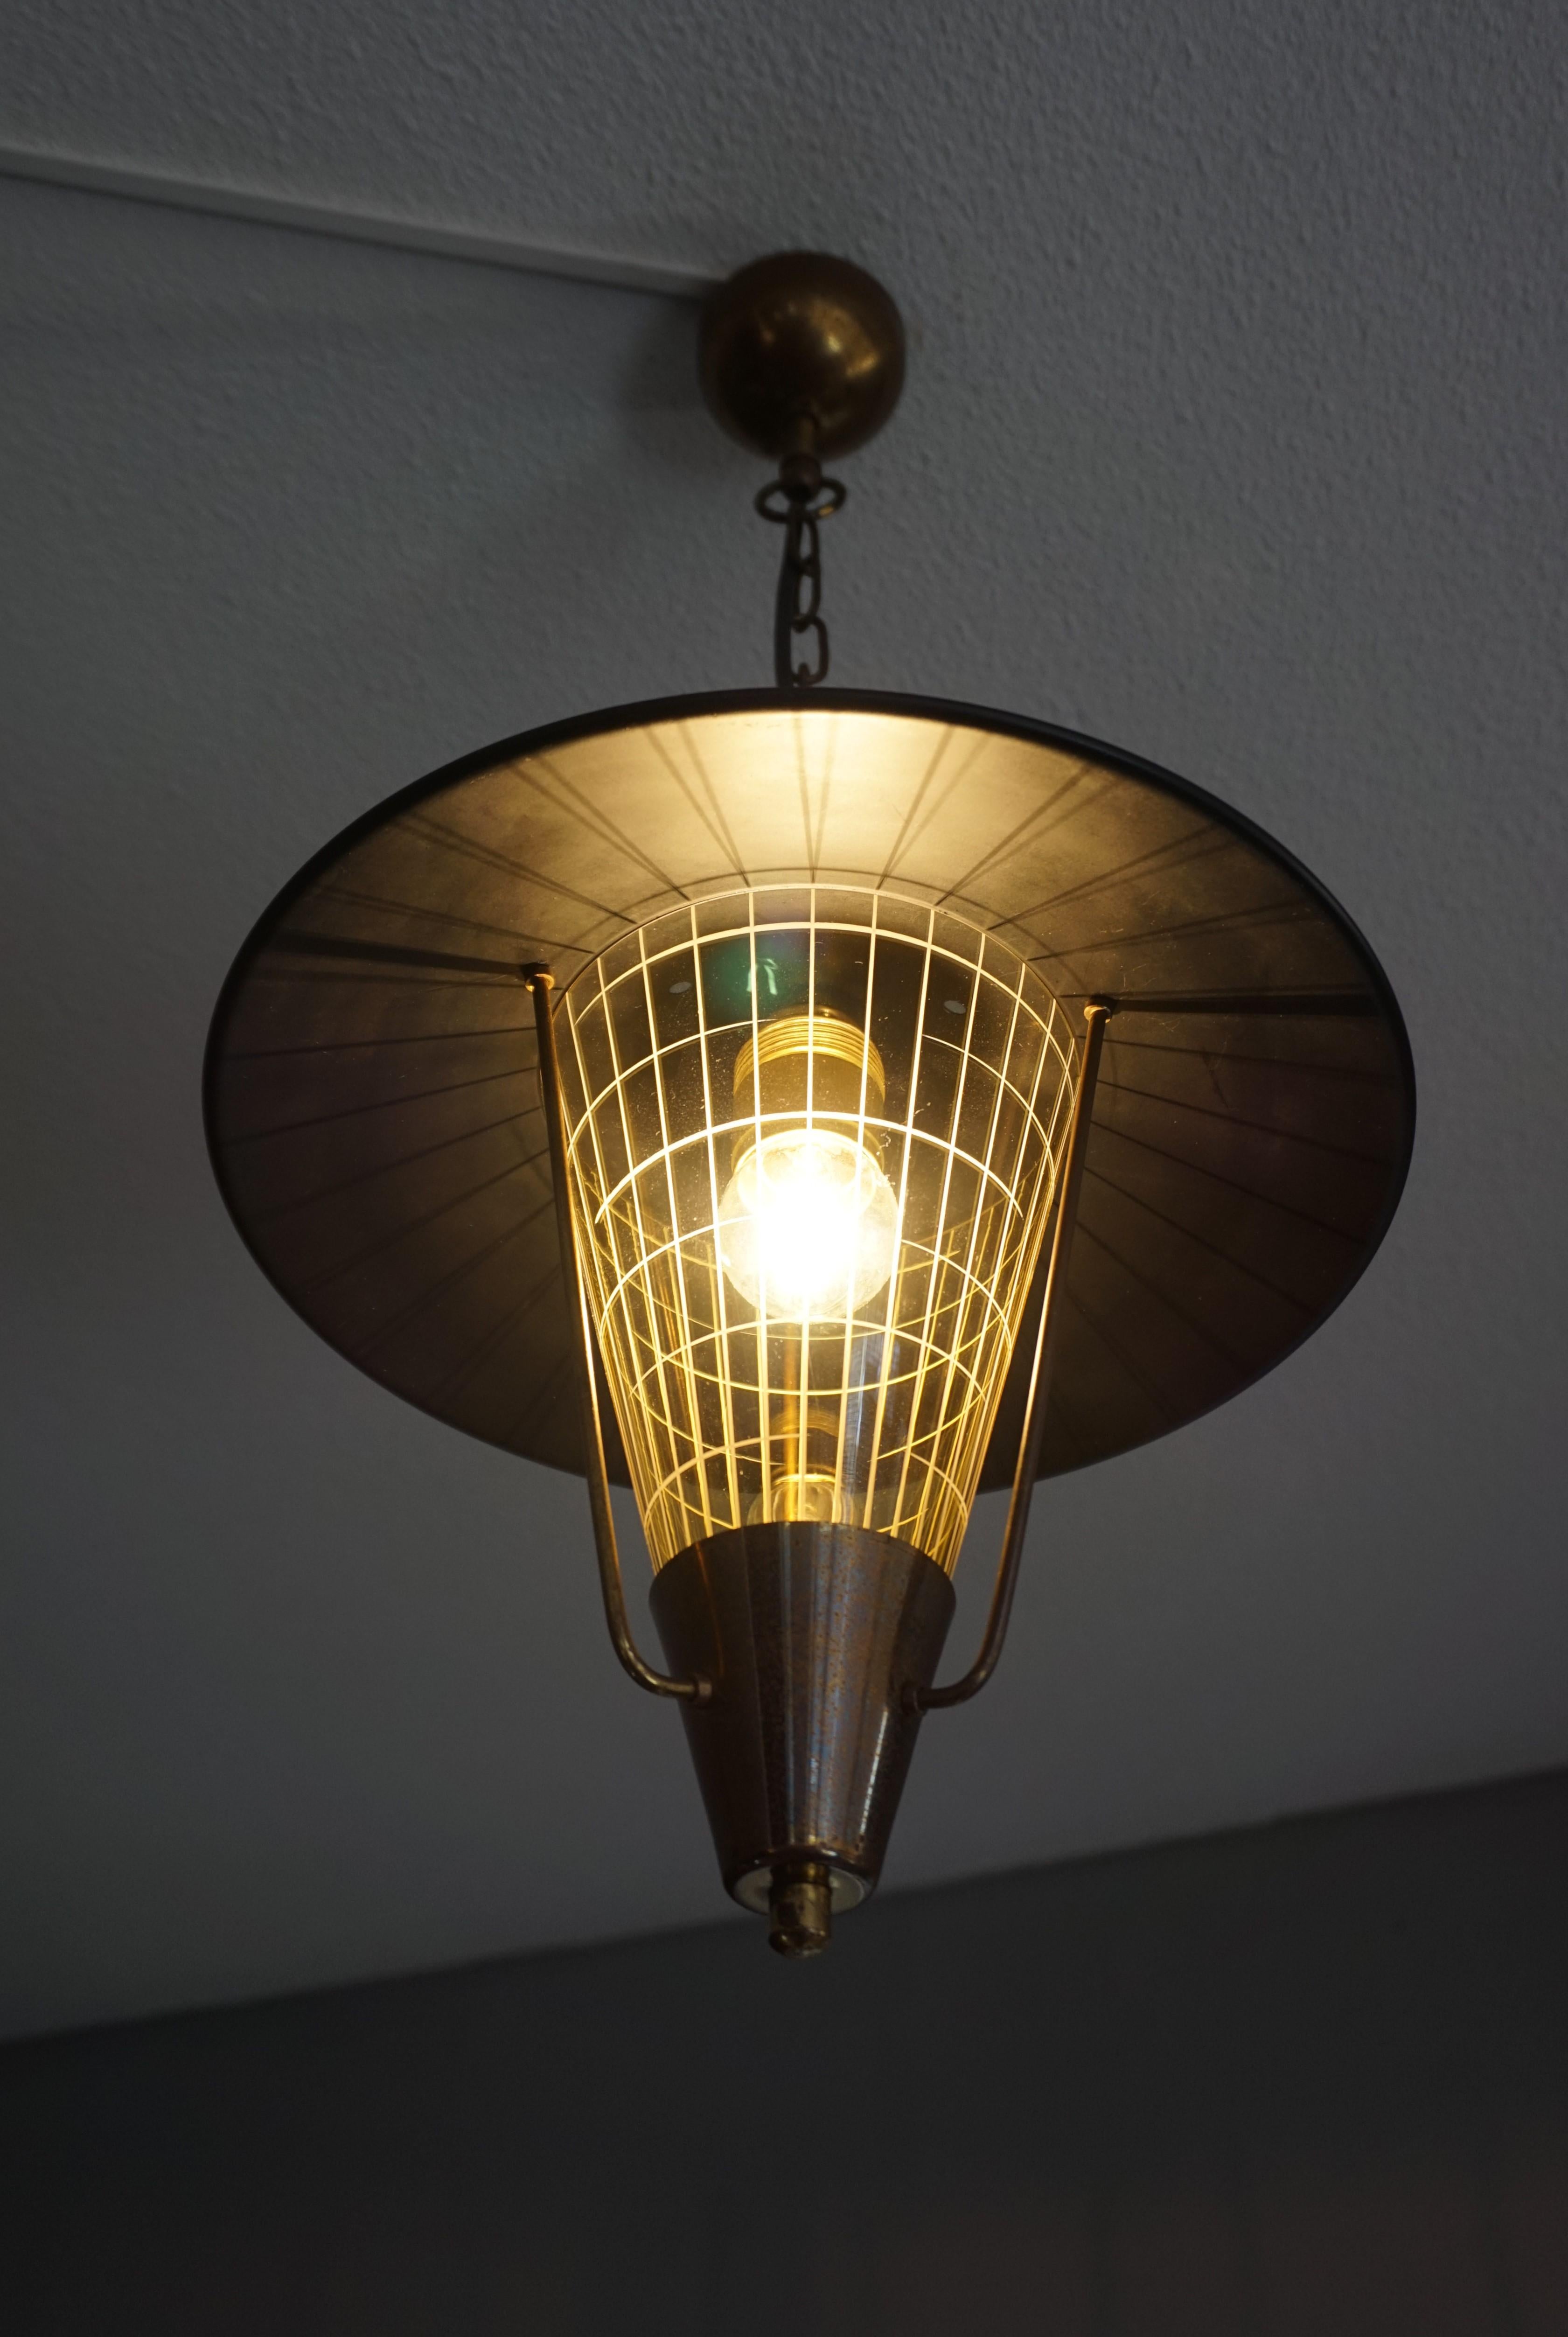 Striking Mid-Century Modern Pendant Light w. Engraved Amber Glass in Brass Frame For Sale 7